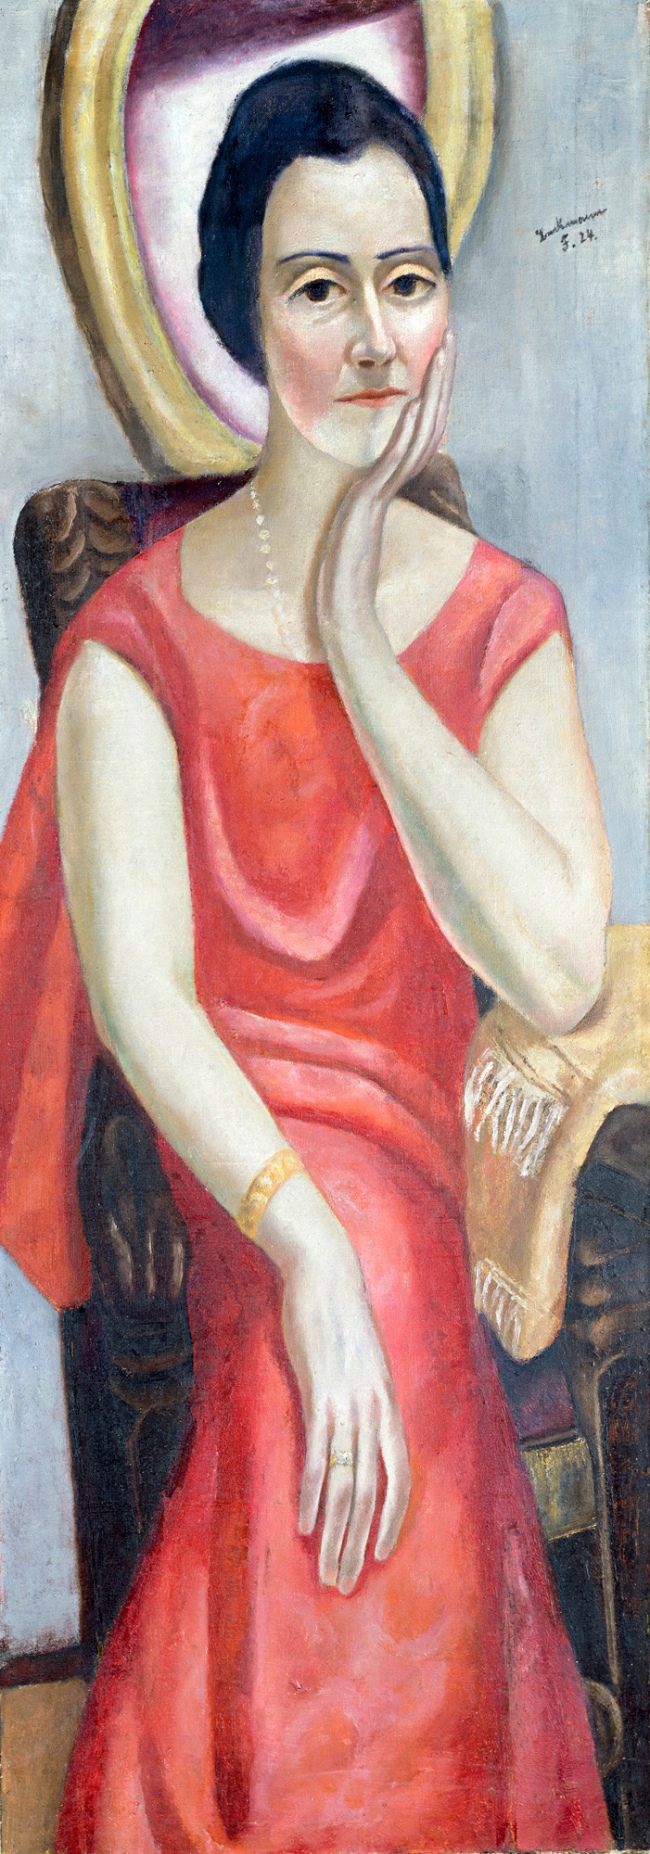 Max Beckmann. 'Portrait of Käthe von Porada' 1924